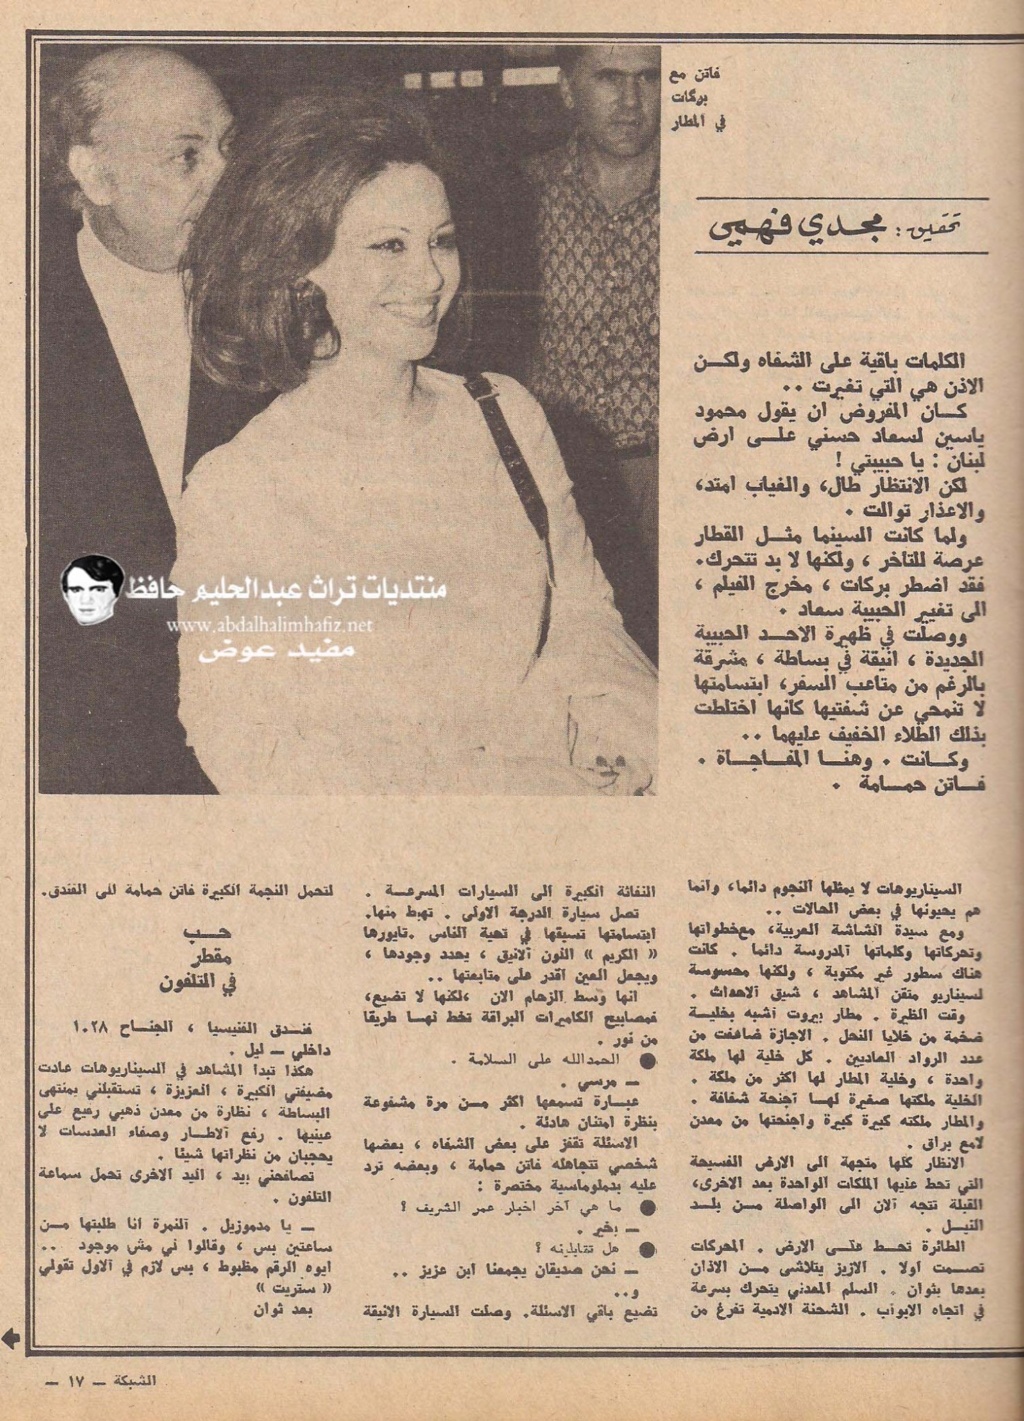 حمامة - مقال صحفي : فاتن حمامة حبيبة في لبنان بدلا من سعاد حسني 1972 م 2174